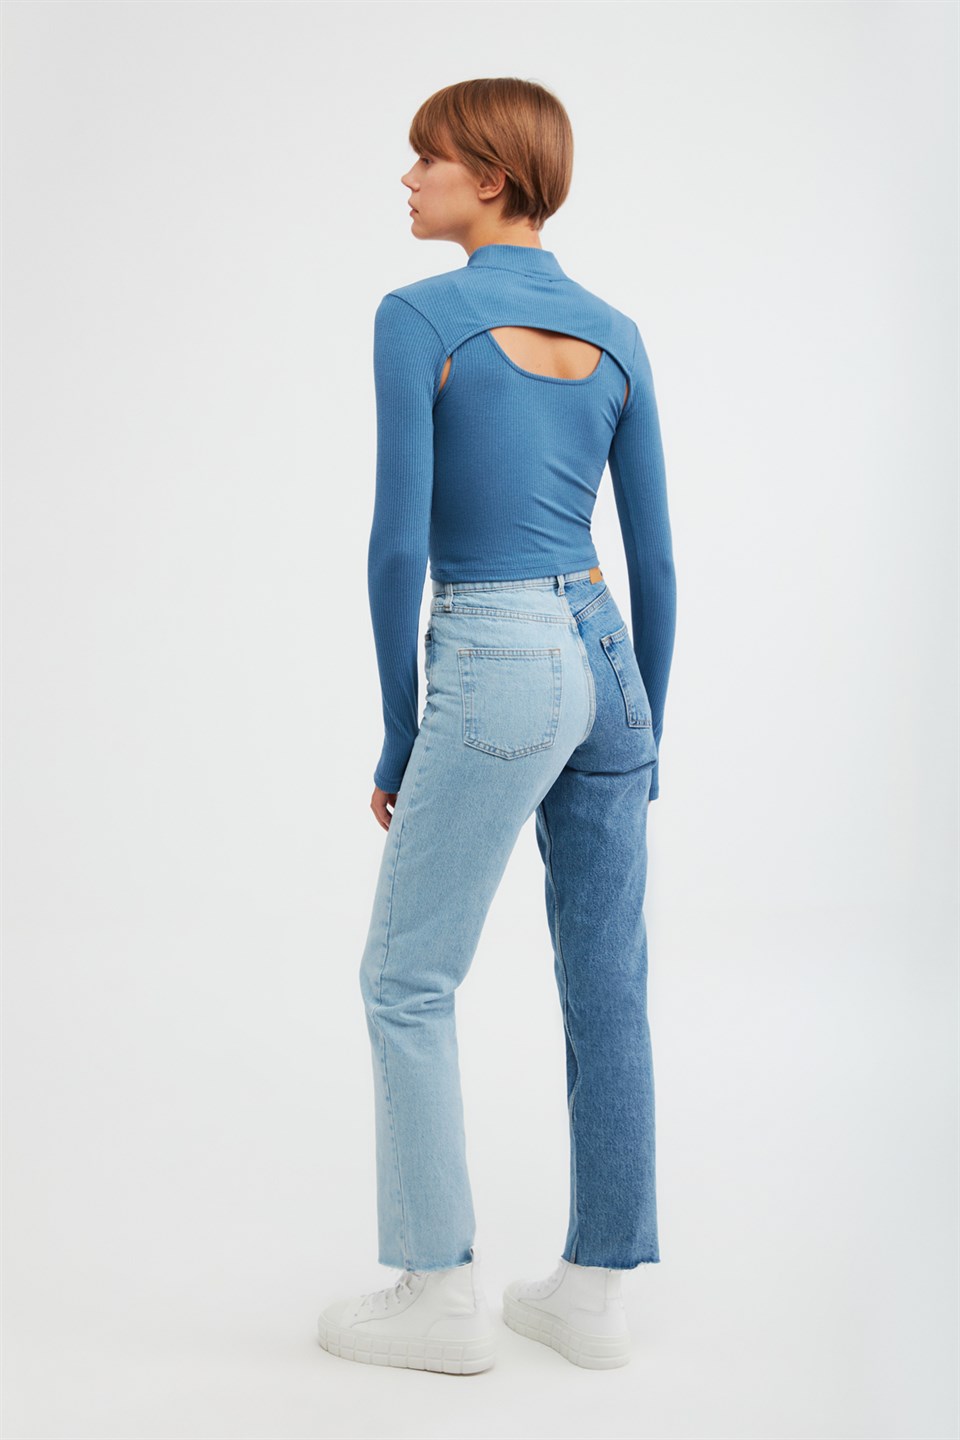 BITTER Kadın Mavi Düz Renk Balıkçı Yaka Slim Fit Bluz